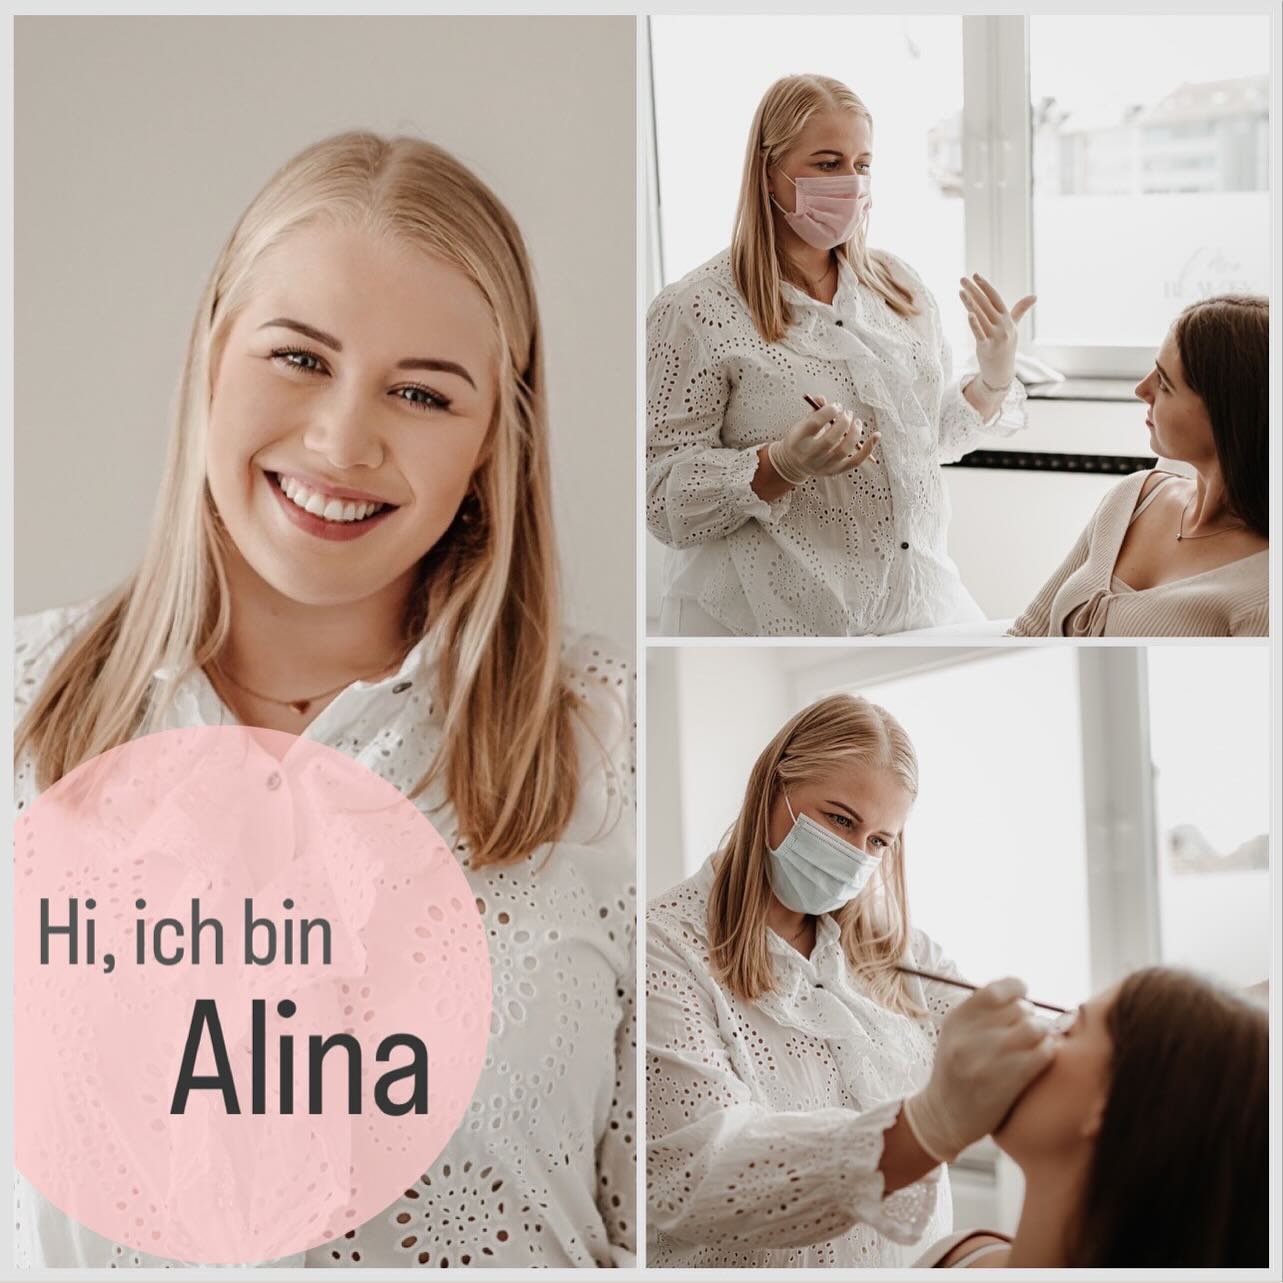 Hi, ich bin Alina,
Vor 4 Jahren fand ich meine Leidenschaft in der Beauty Branche. 

Ich liebe es mit Menschen zu arbeiten und sie gl&uuml;cklich zu machen. Beim Aus&uuml;ben von Permanent Make up trage ich eine gro&szlig;e Verantwortung und kann dab